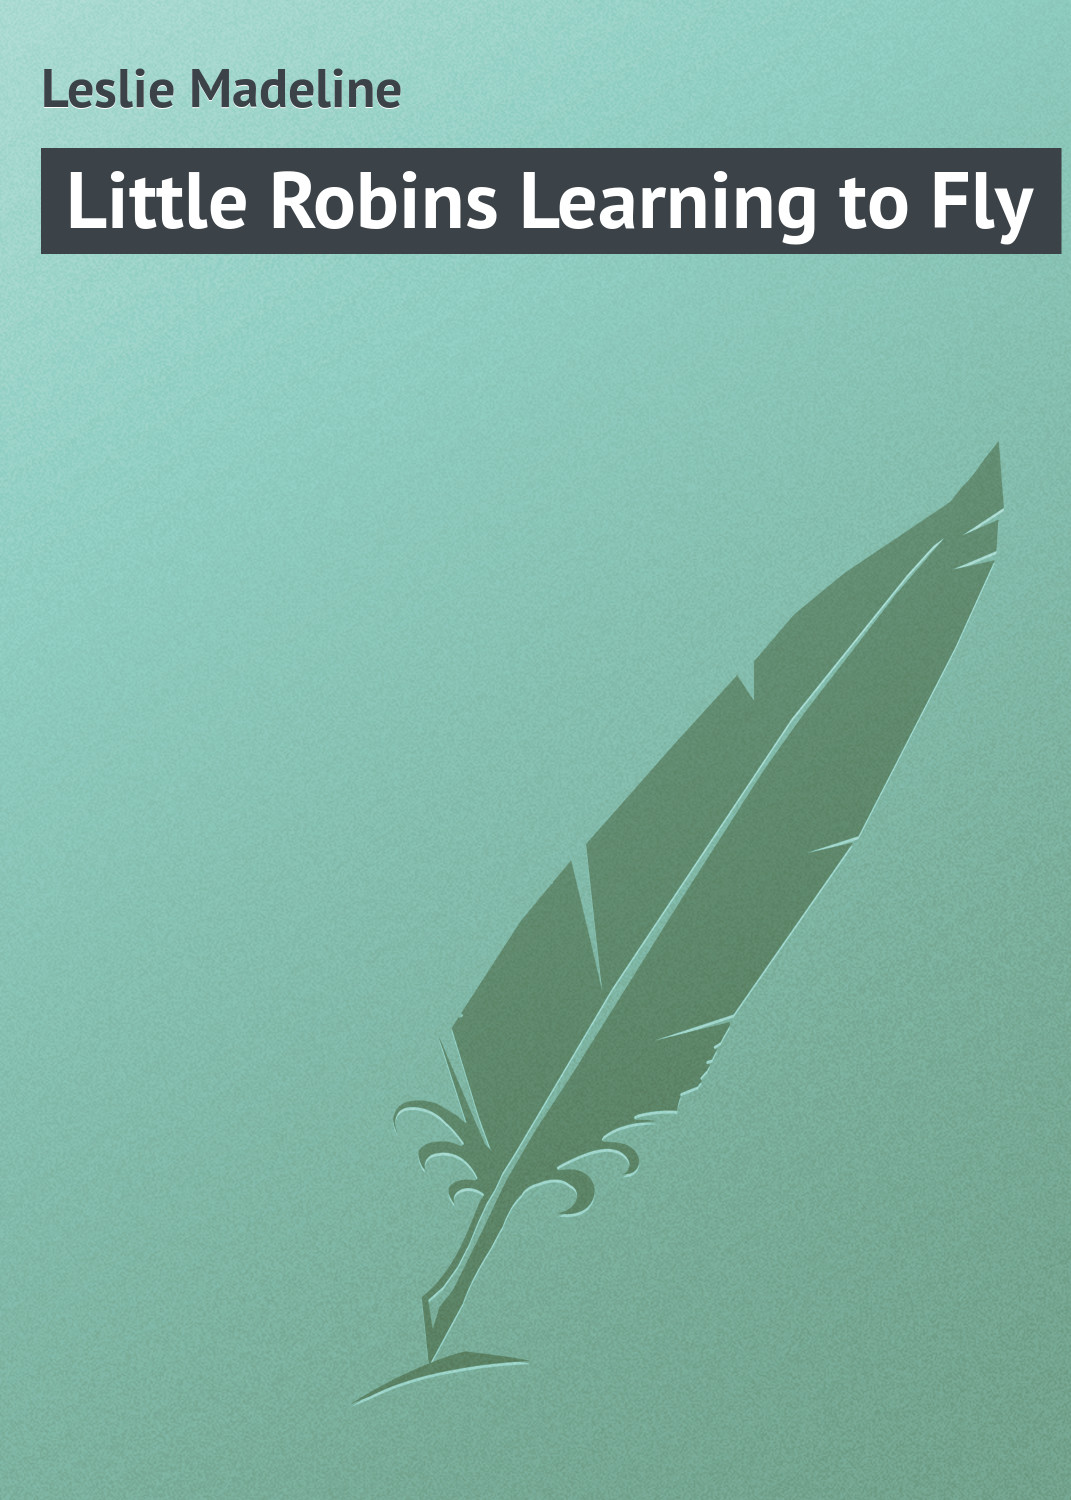 Книга Little Robins Learning to Fly из серии , созданная Madeline Leslie, может относится к жанру Зарубежная классика, Зарубежные детские книги. Стоимость электронной книги Little Robins Learning to Fly с идентификатором 23149571 составляет 5.99 руб.